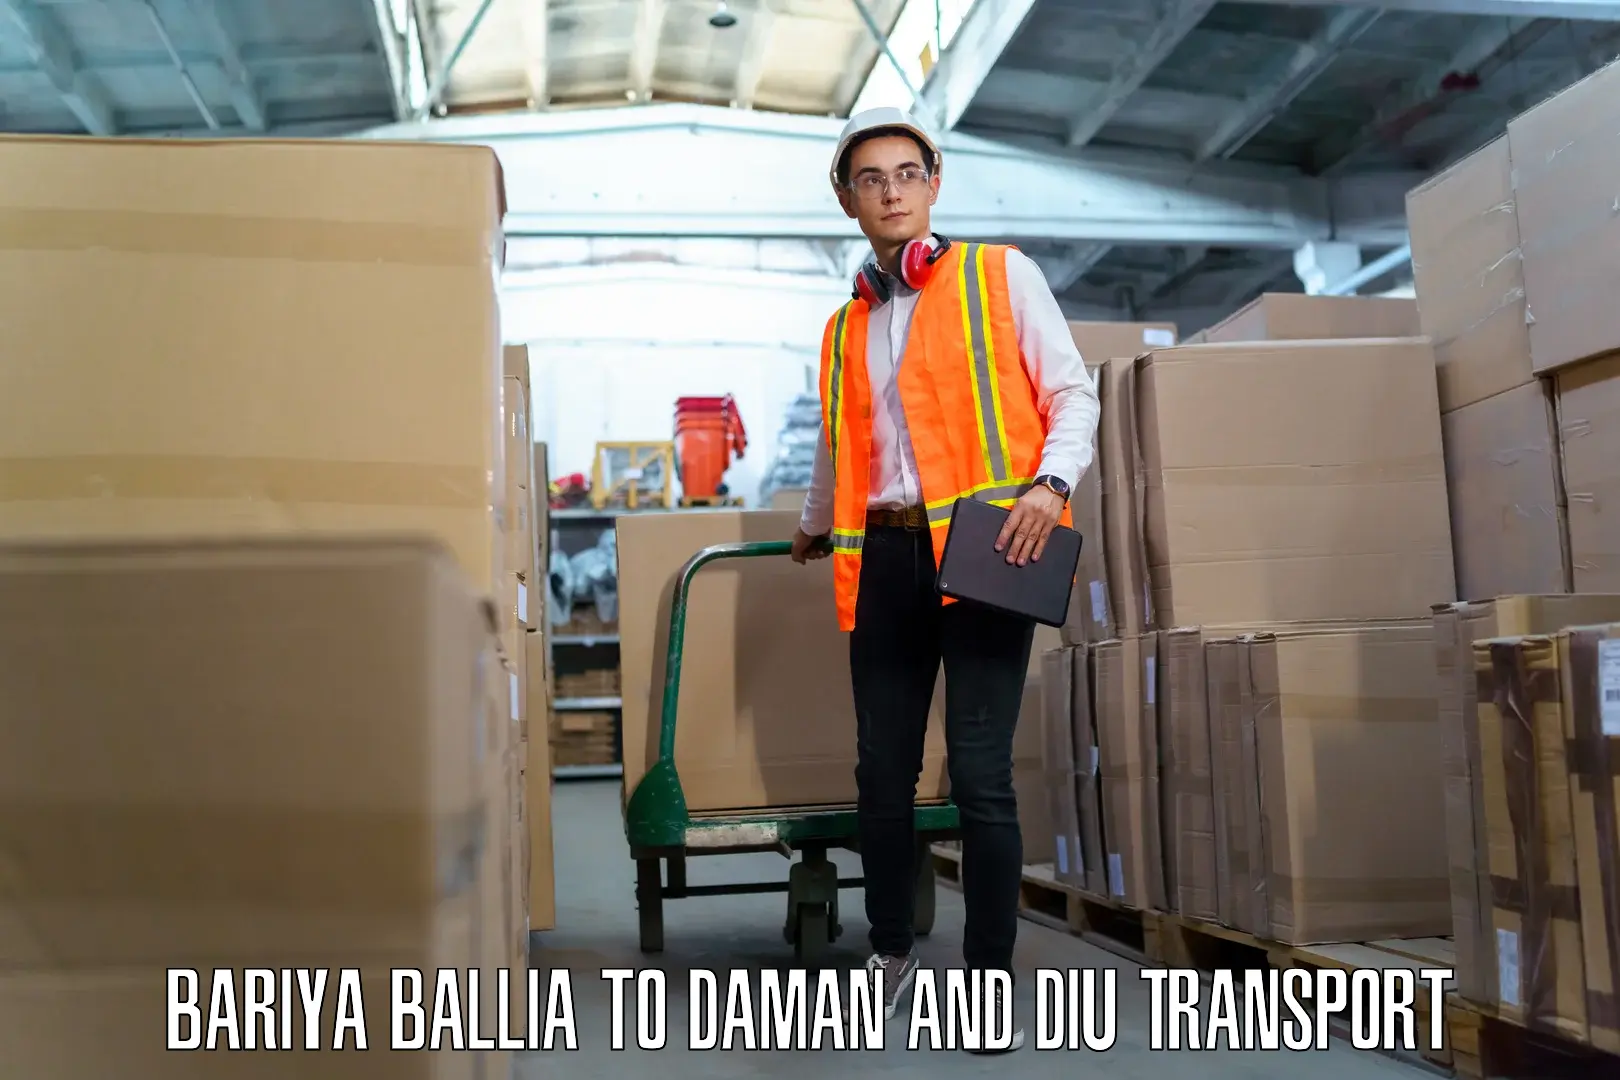 Nearest transport service Bariya Ballia to Daman